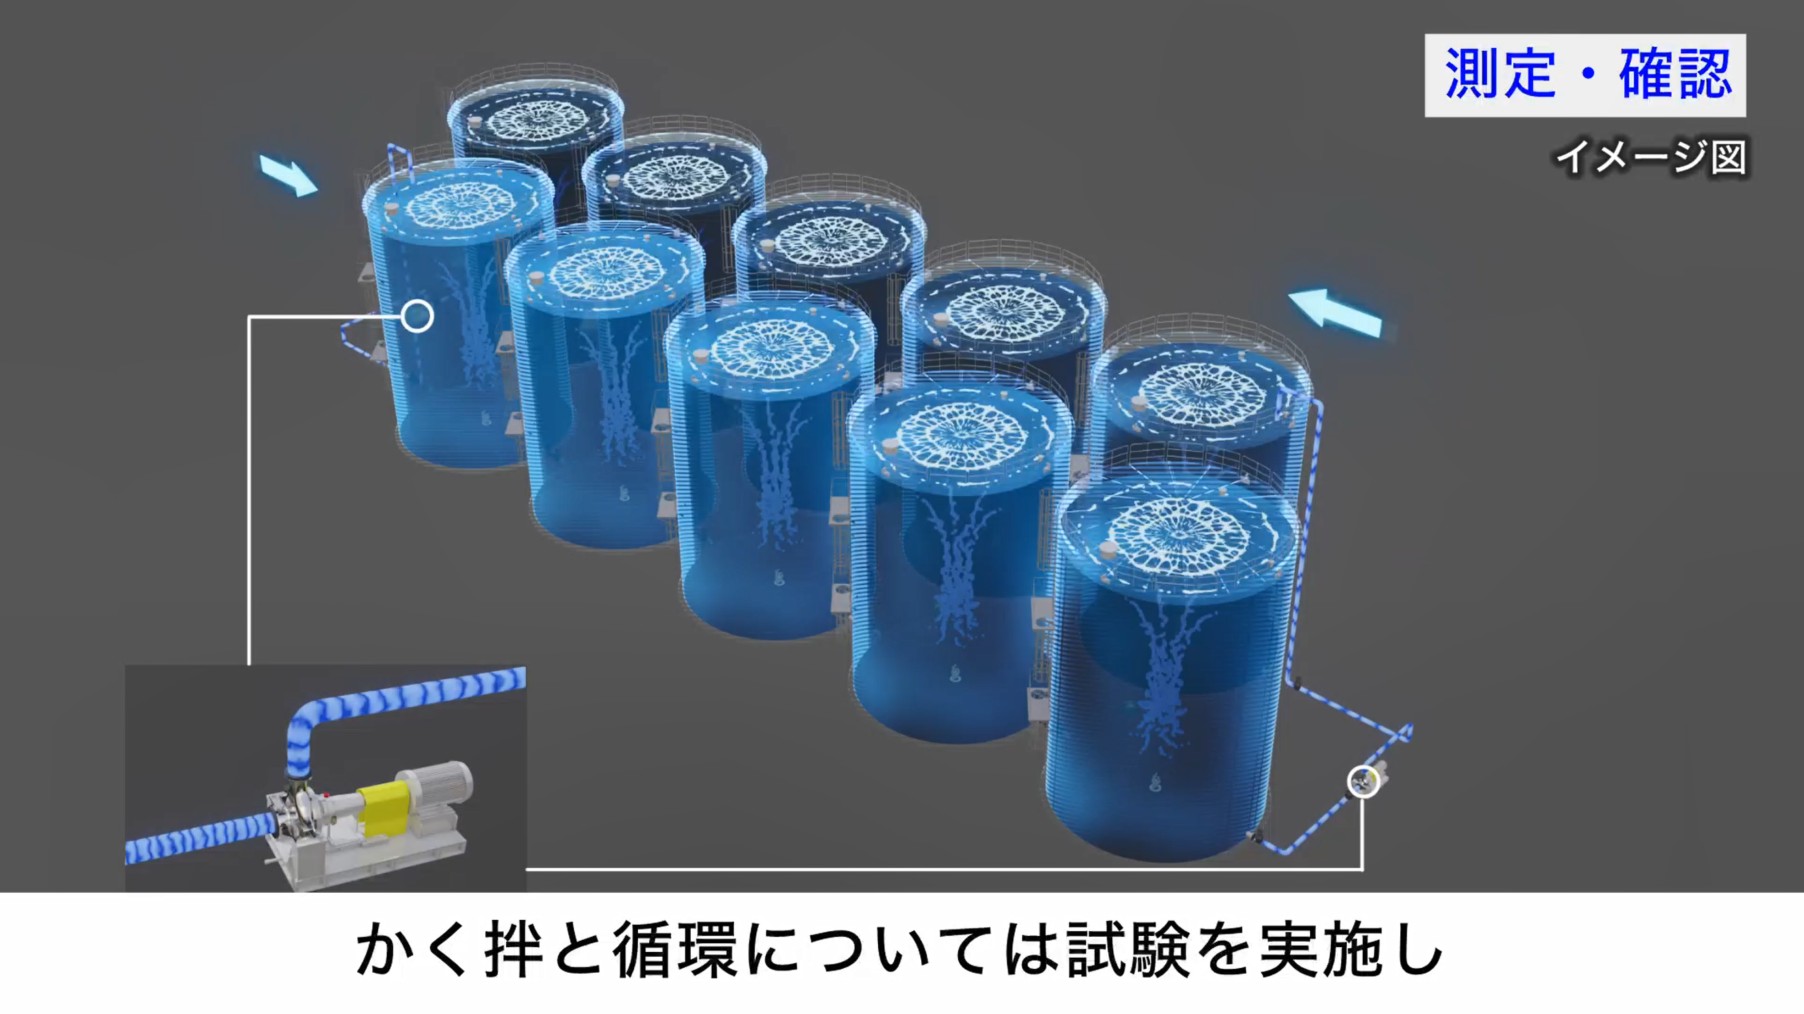 福島第一原子力発電所 測定・確認用設備の概要